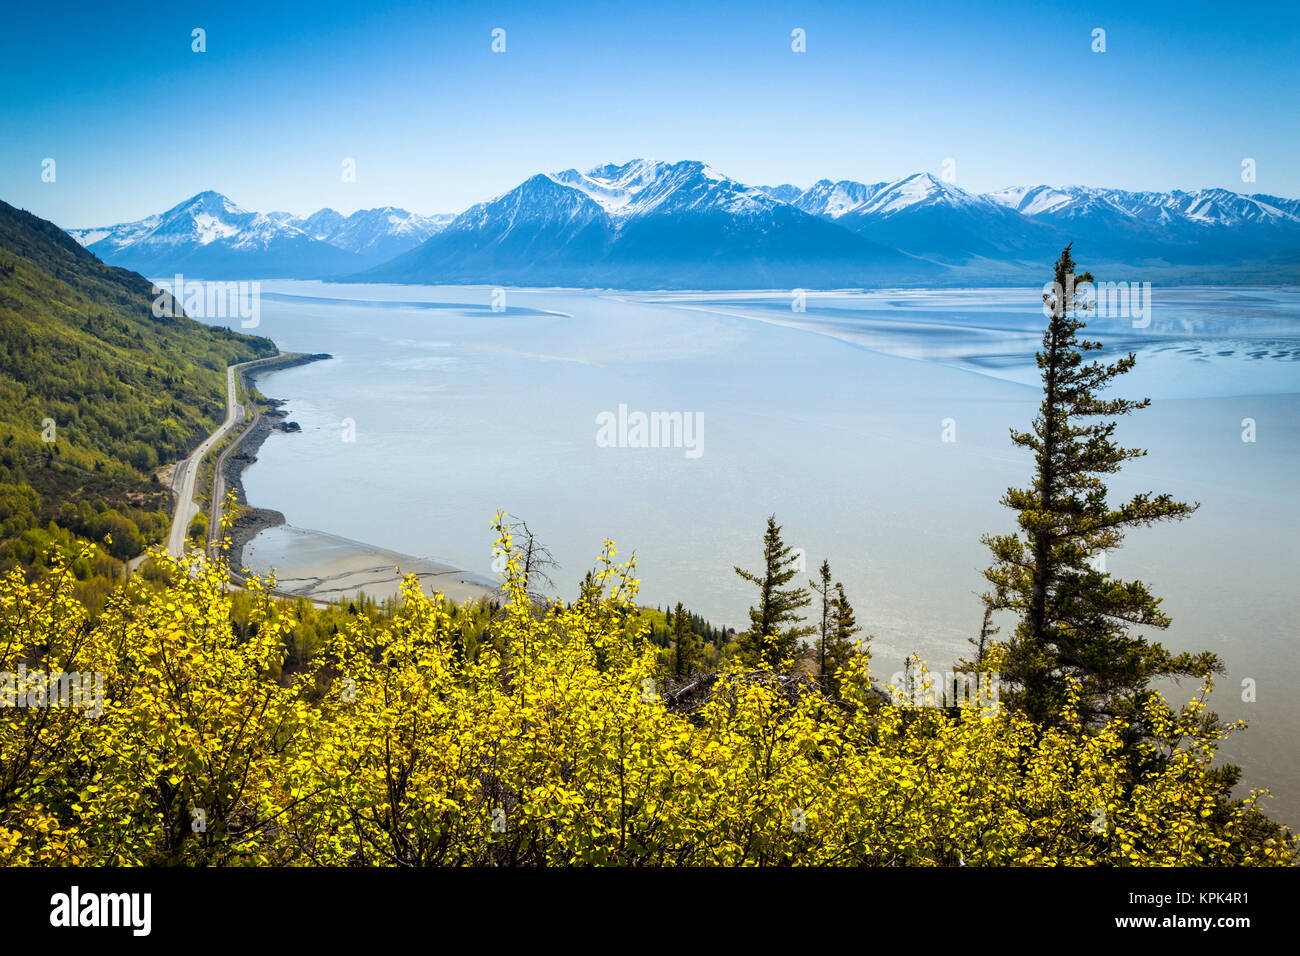 Vista panorámica de las montañas Kenai y brazo Turnagain bajo el cielo azul, el verde exuberante de Bush en el primer plano, Alaska, Estados Unidos de América Foto de stock